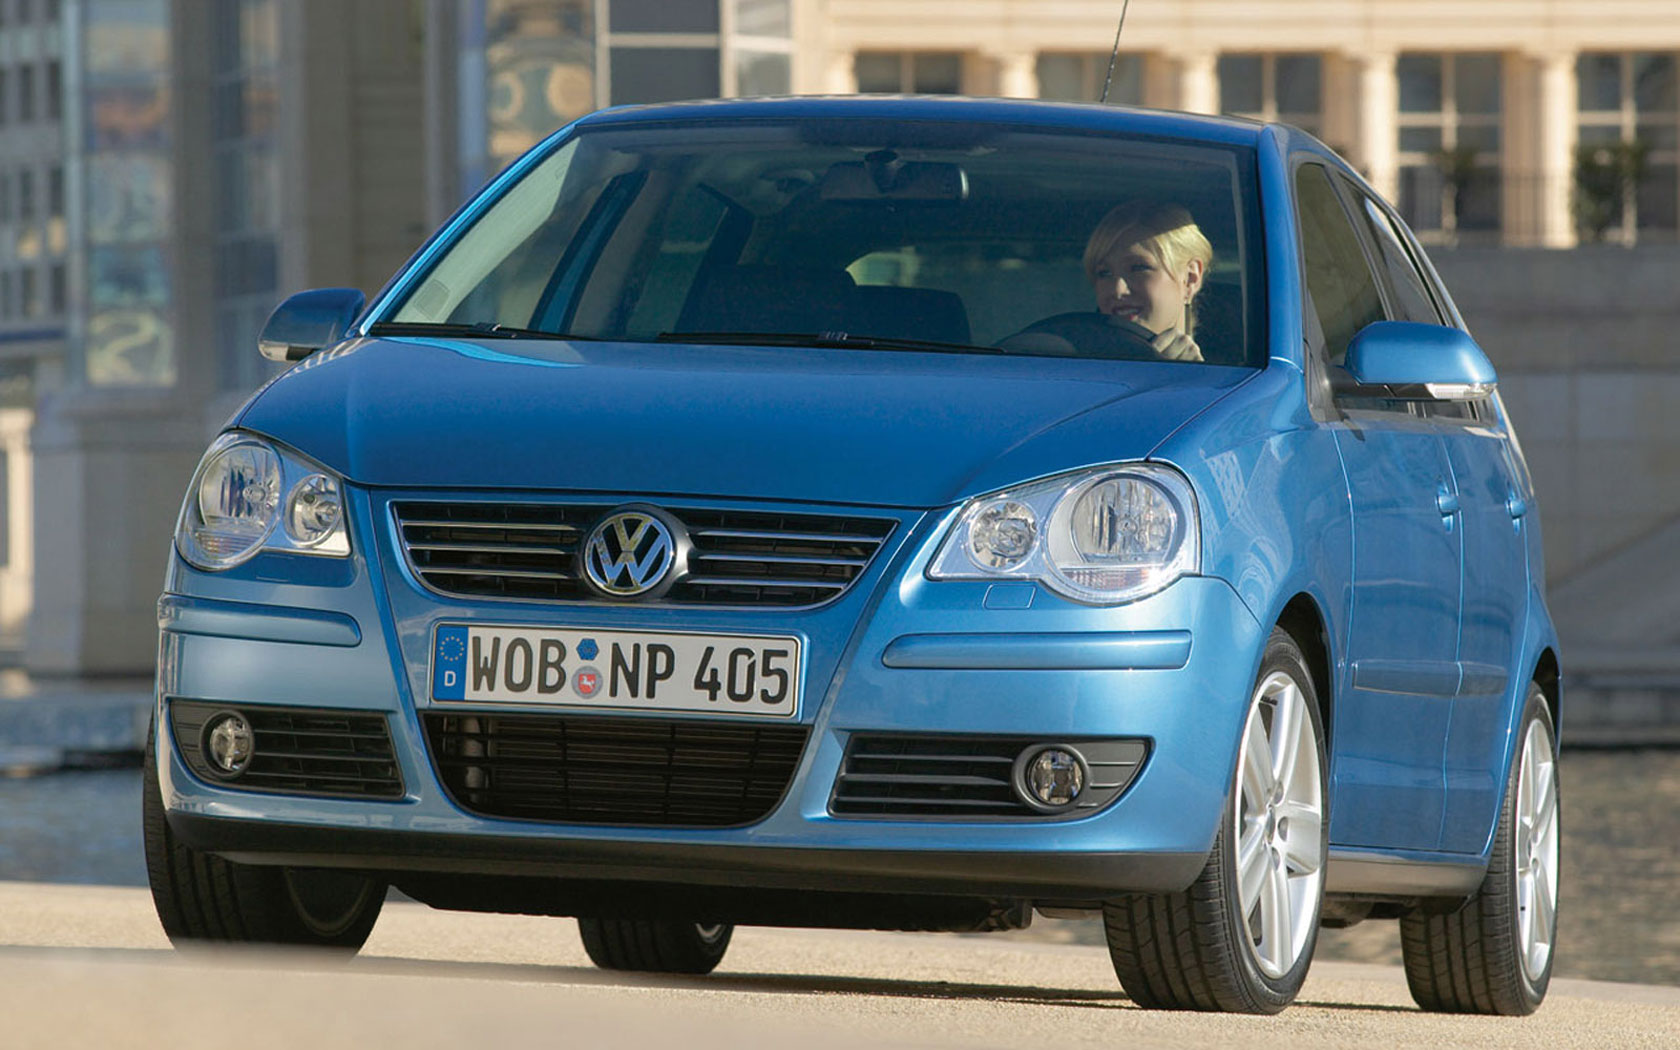  Volkswagen Polo (2005-2009)